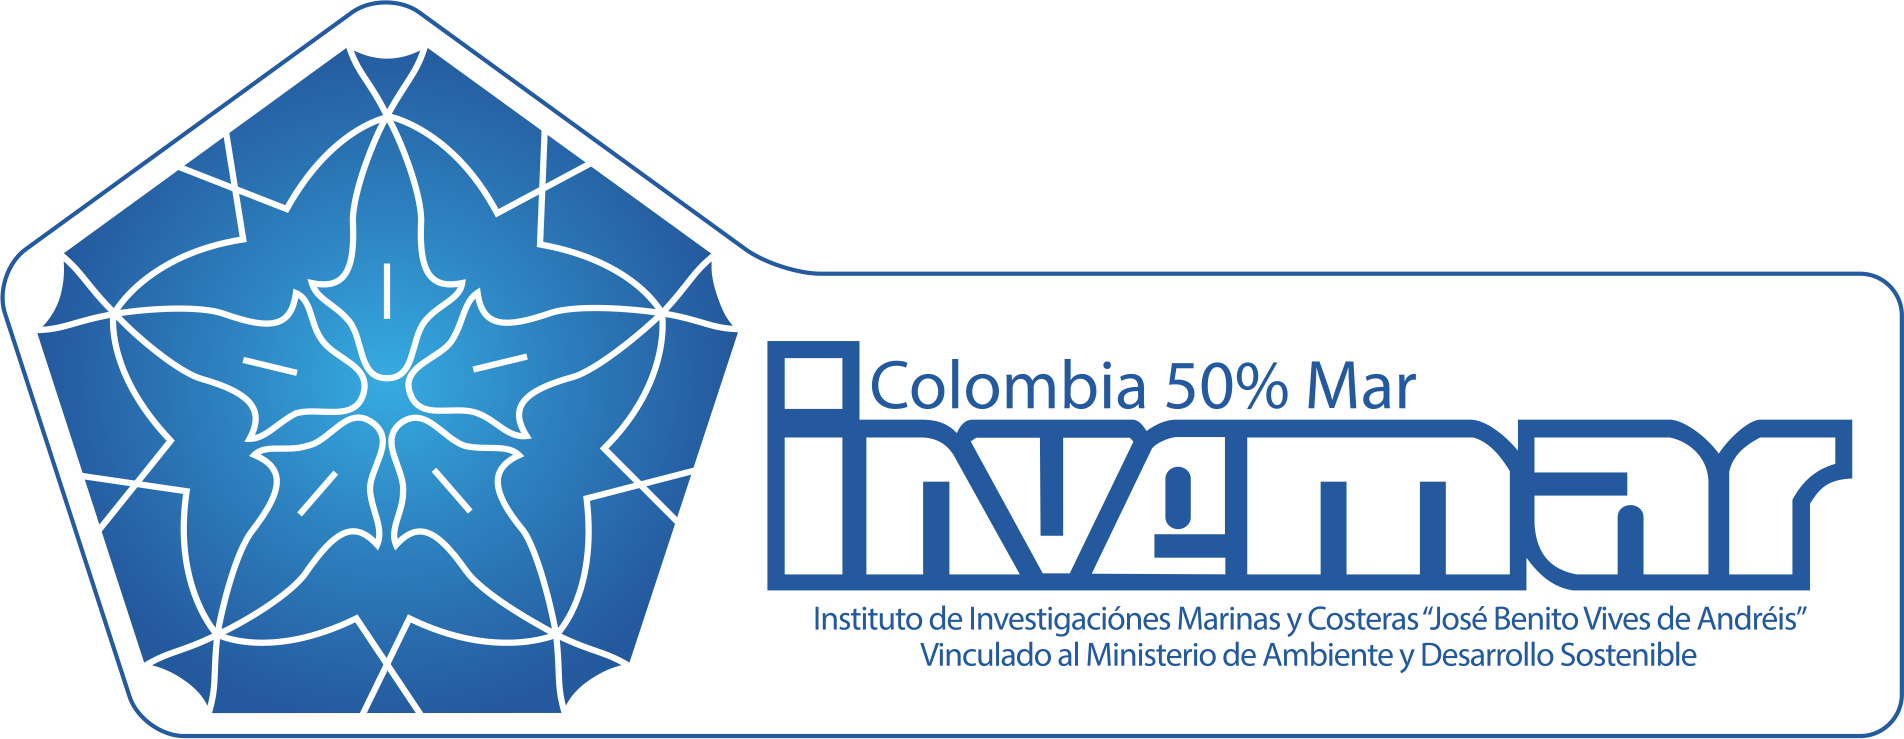 Instituto de Investigaciones Marinas y Costeras José Benito Vives de Andréis